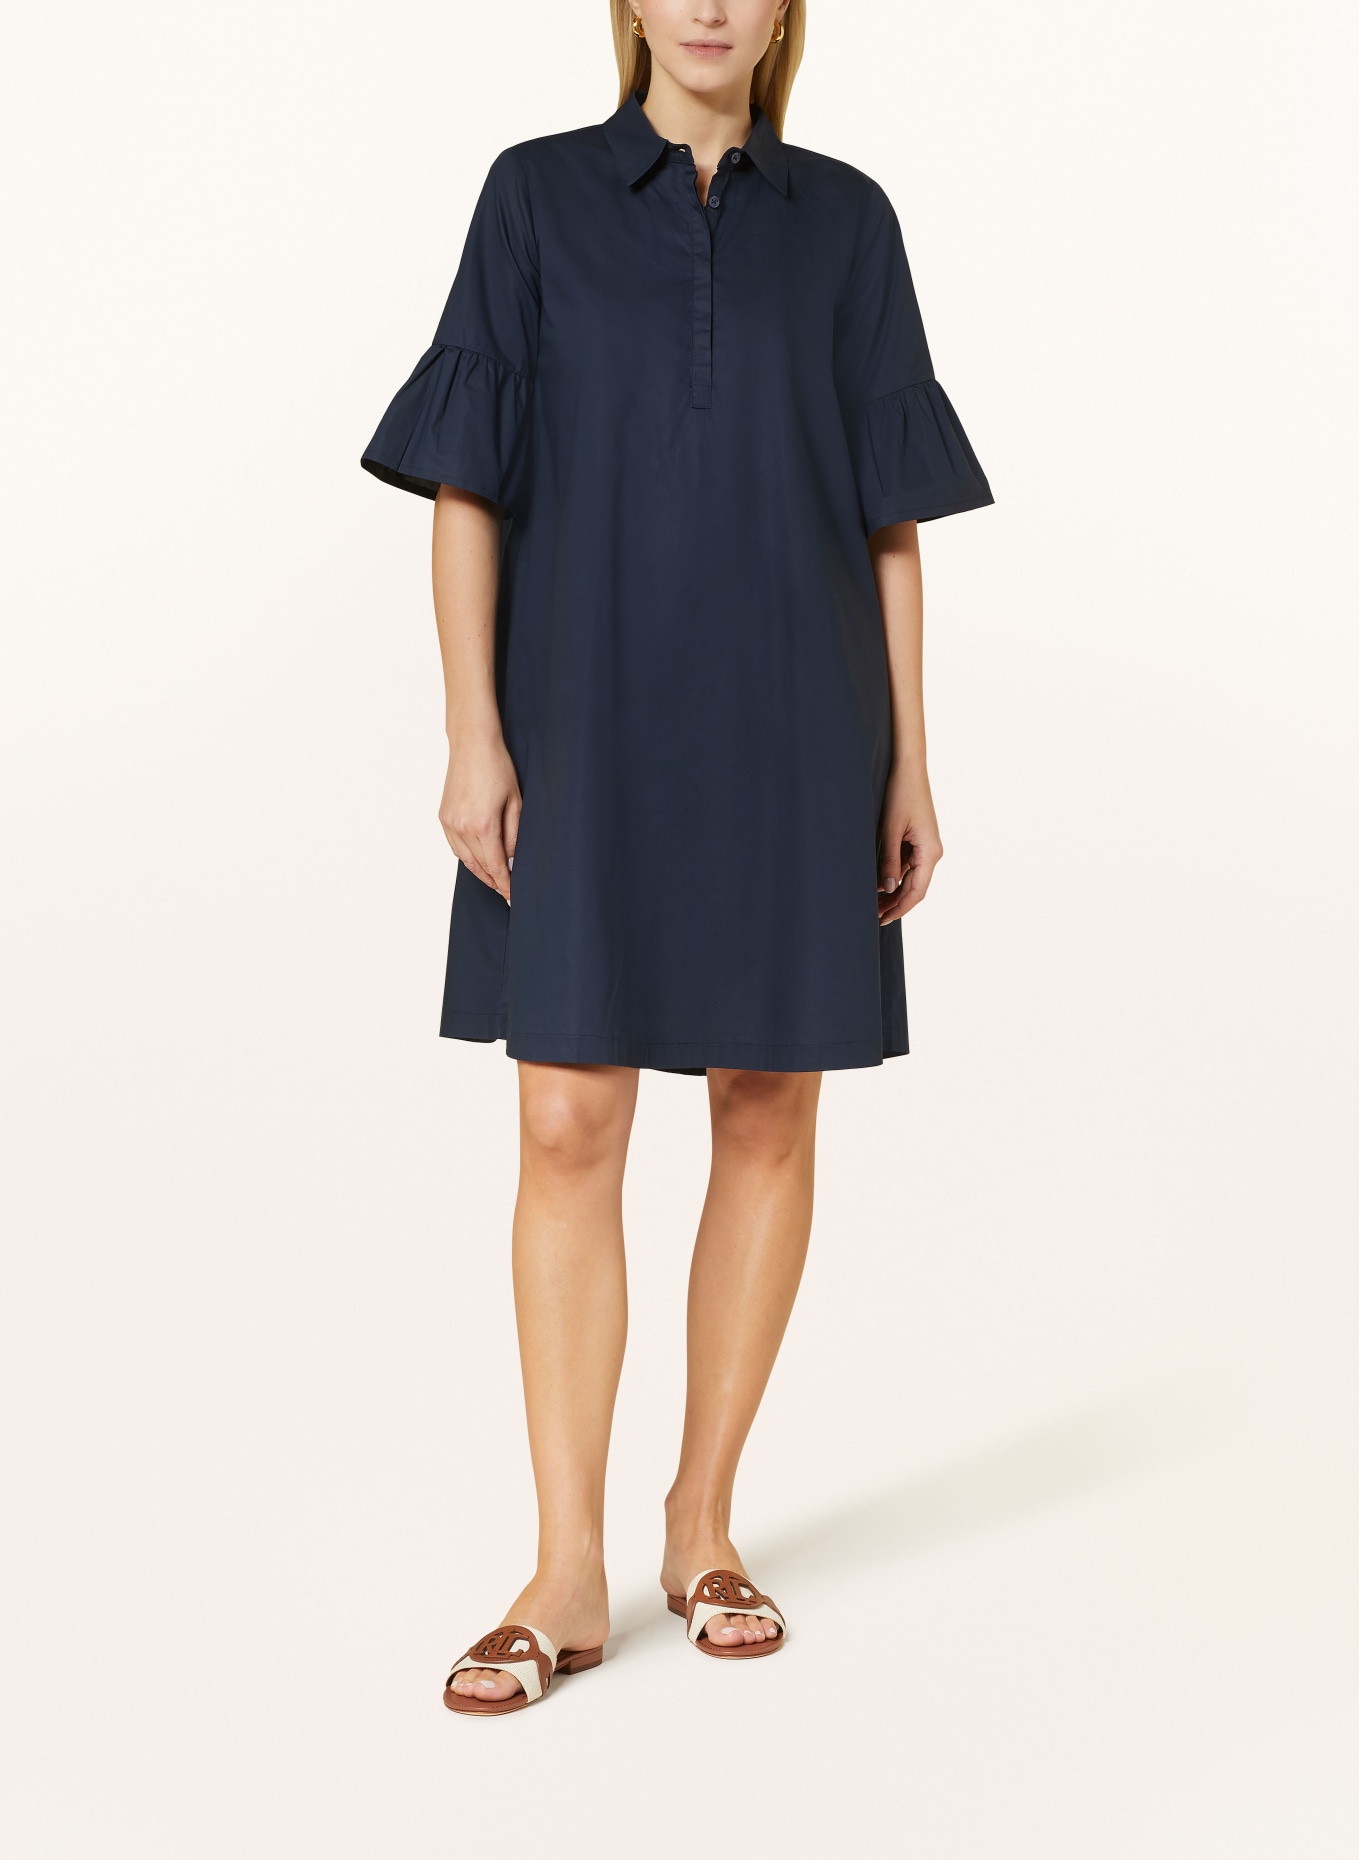 CATNOIR Kleid mit 3/4-Arm, Farbe: 69 NAVY (Bild 2)